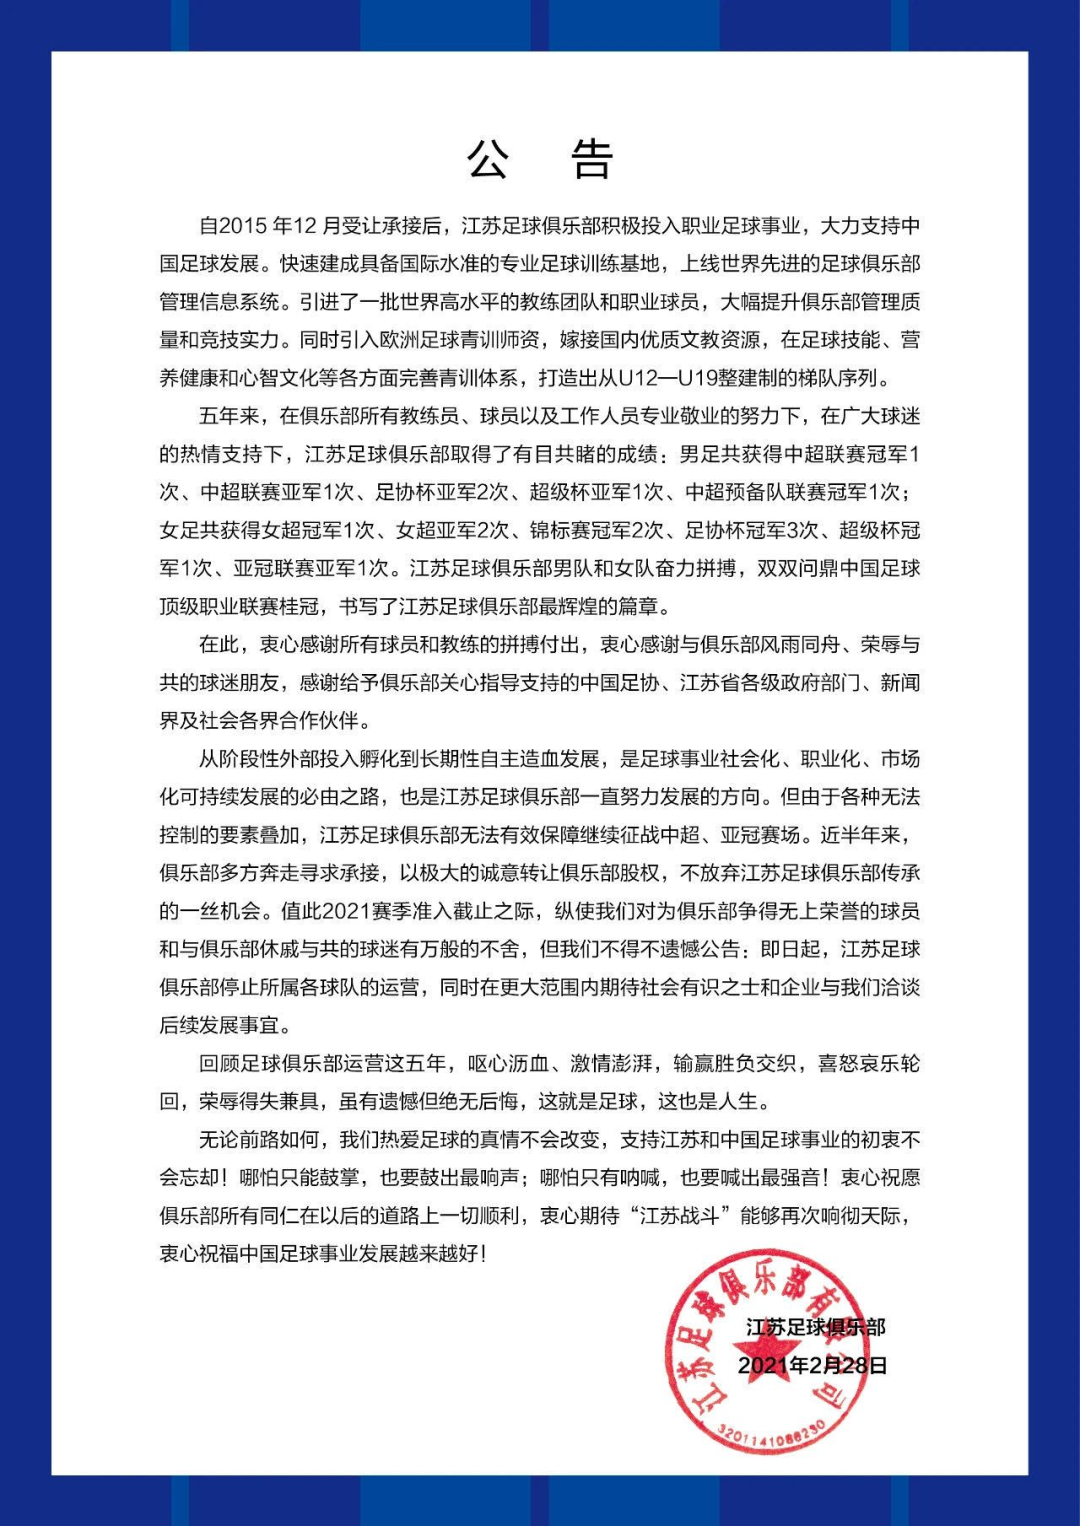 ▲江苏足球俱乐部宣布停运。图源江苏足球俱乐部官方微博。